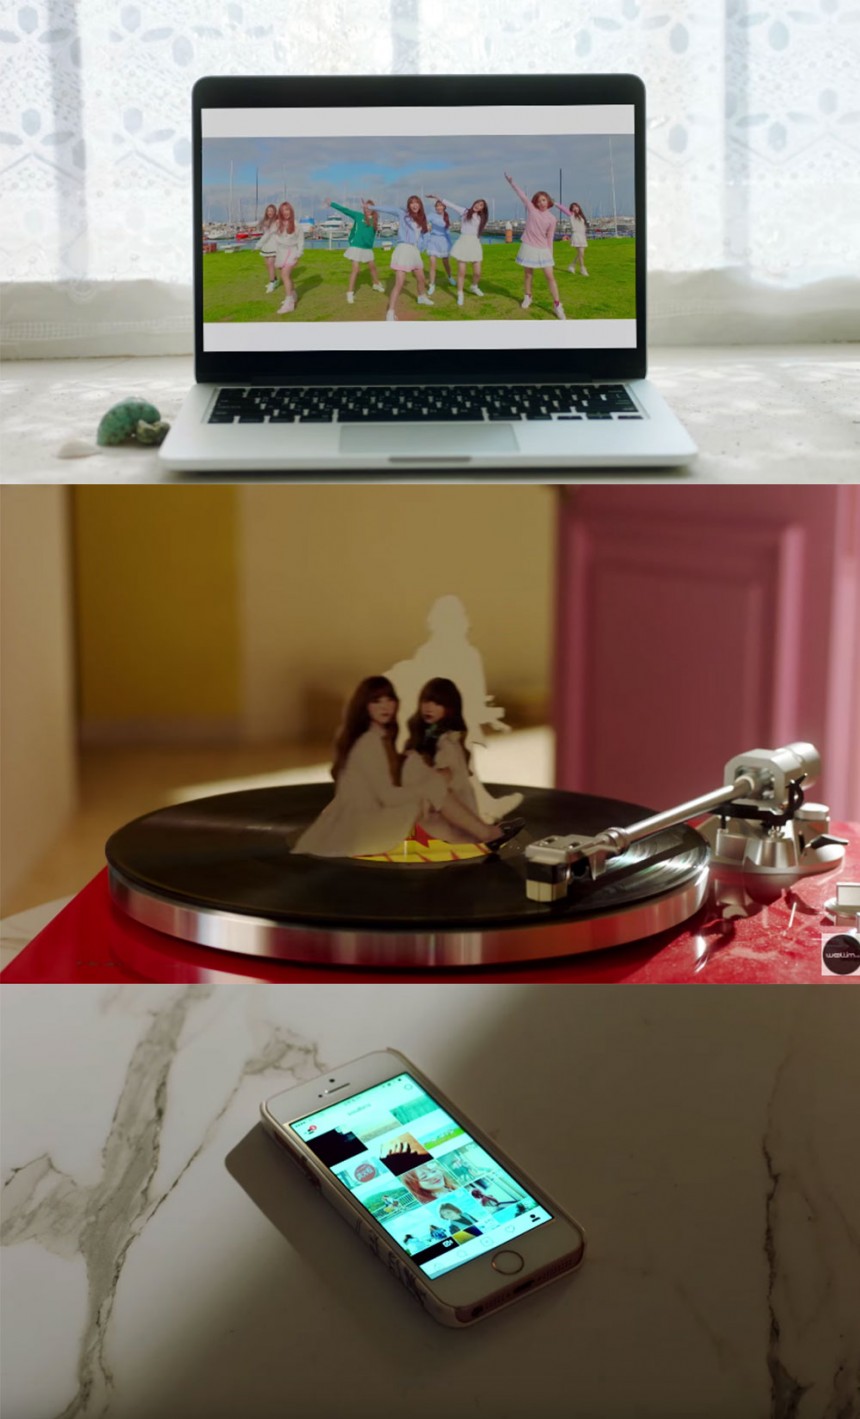 러블리즈(Lovelyz) ‘WOW!’ MV / 러블리즈(Lovelyz) ‘WOW!’ MV 영상 캡처